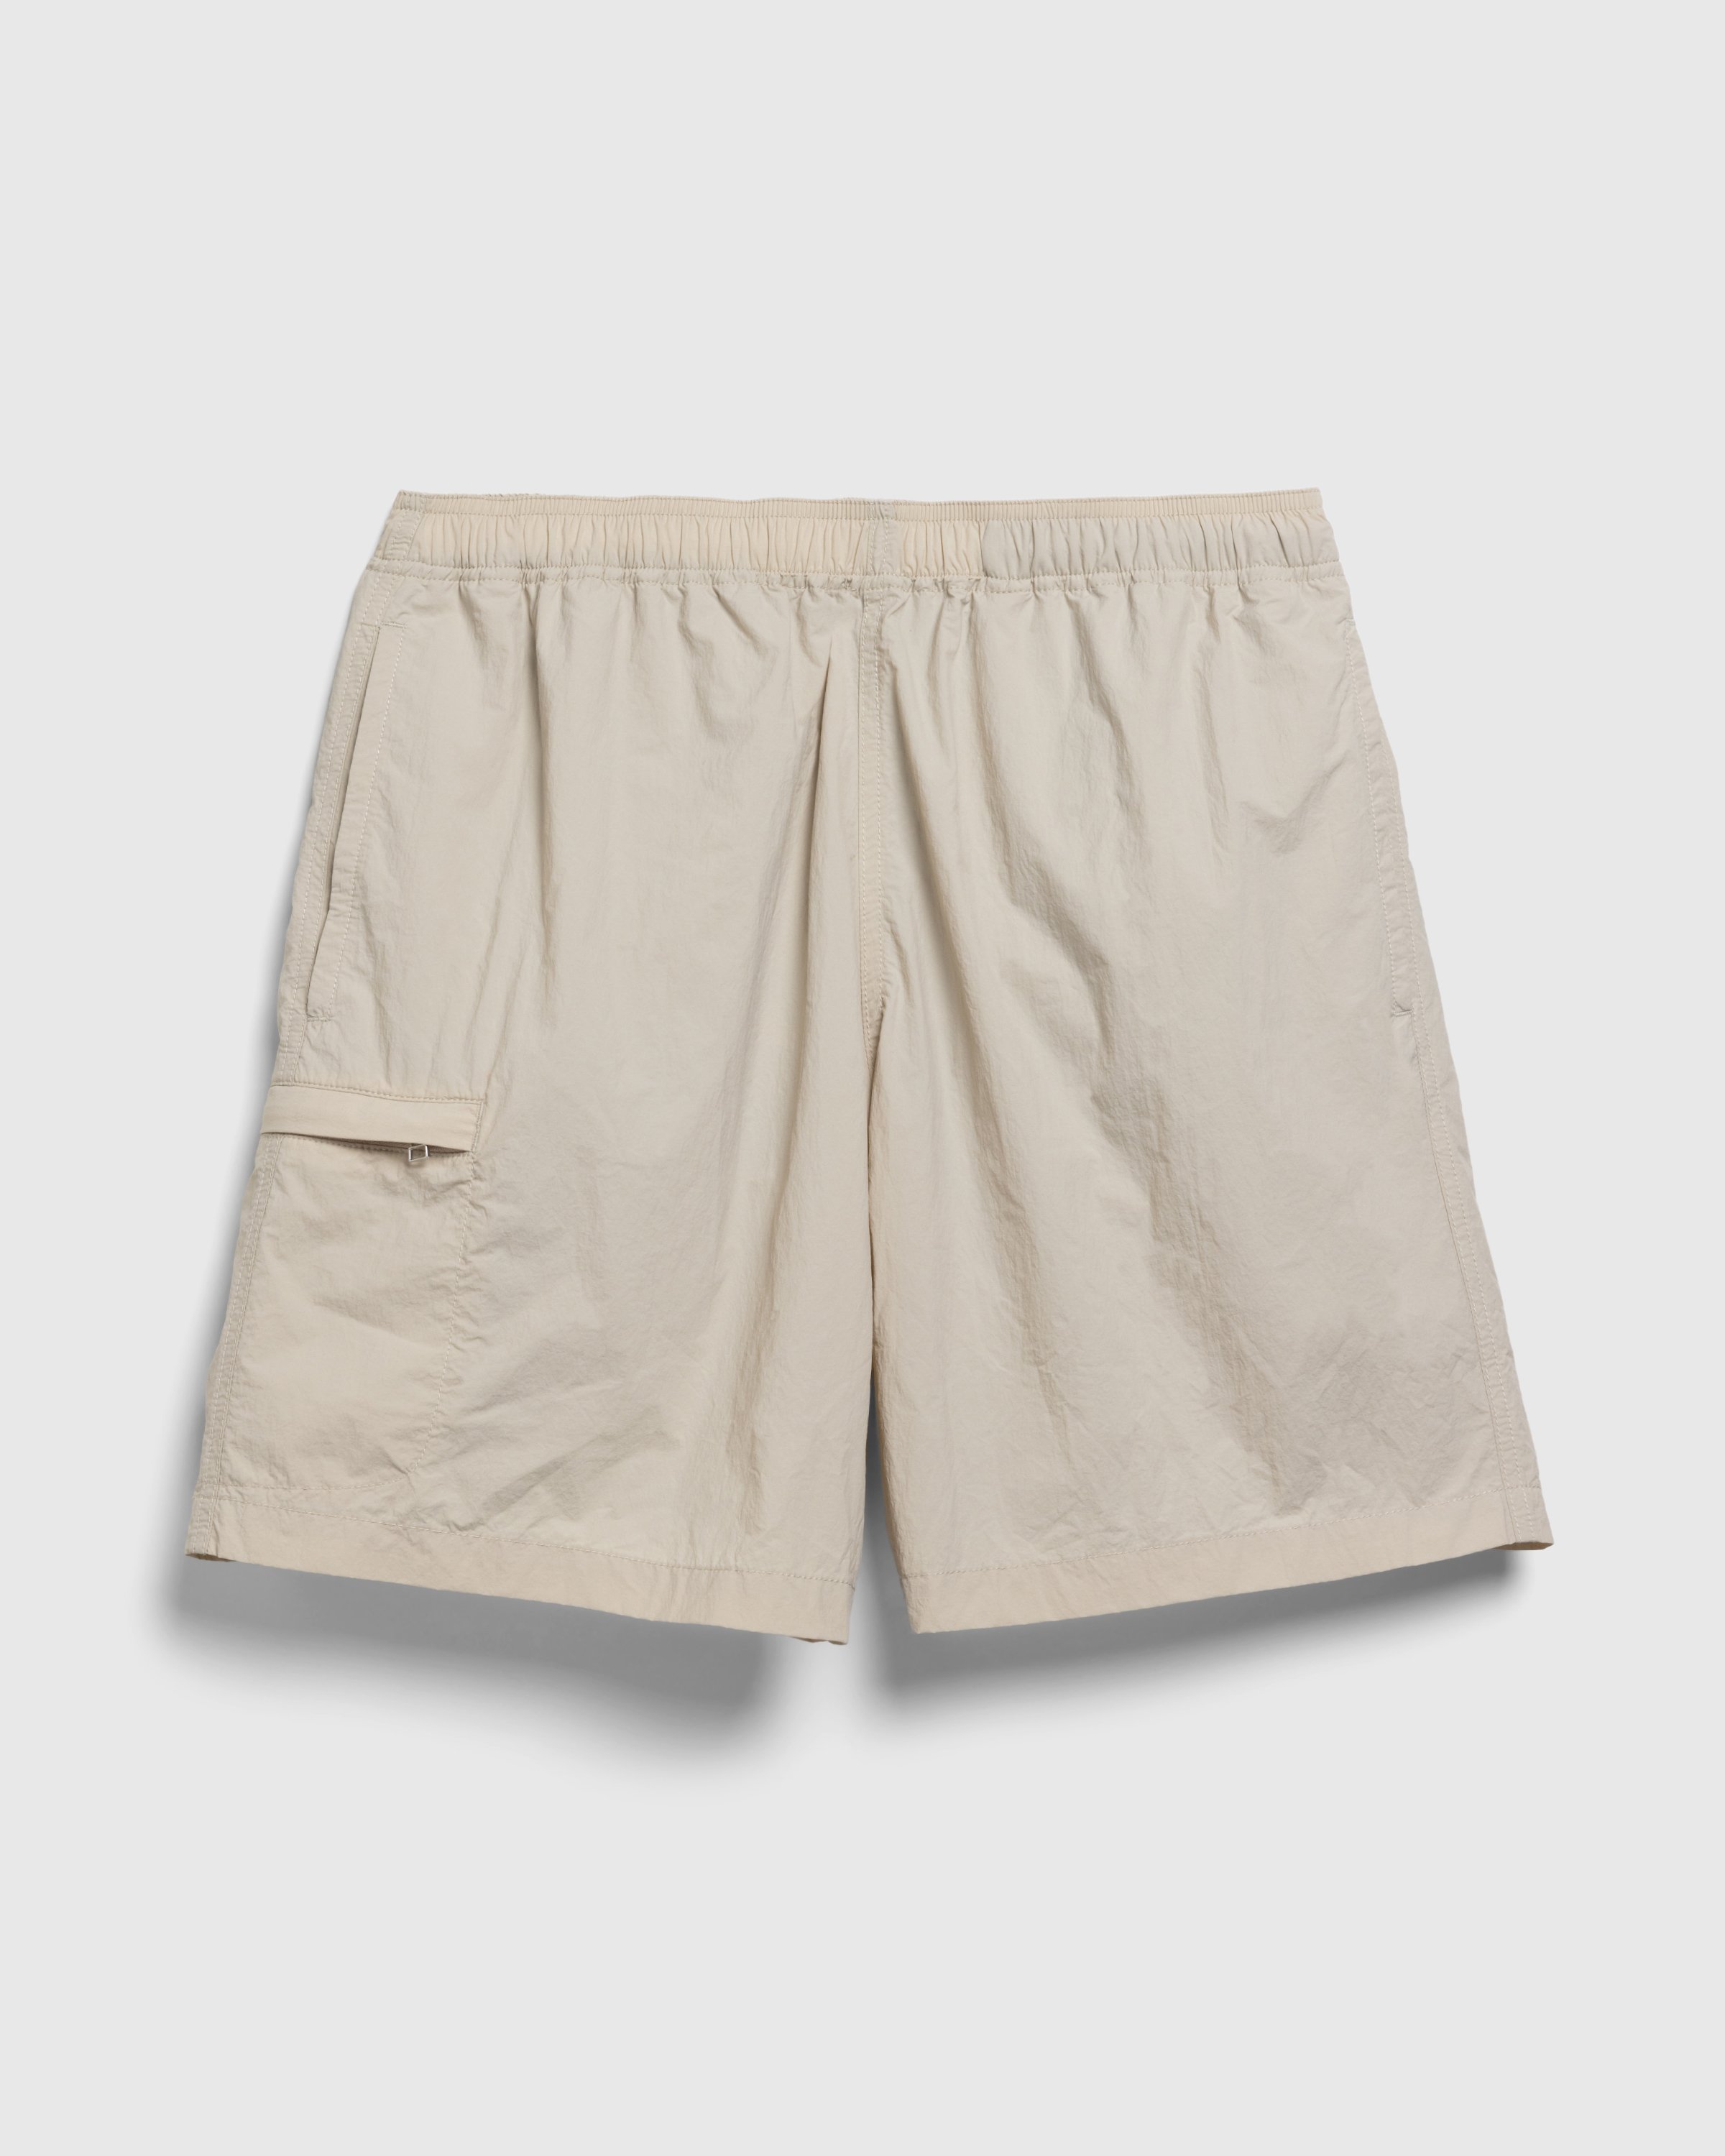 Highsnobiety HS05 - Natural Dyed Nylon Shorts Beige - Clothing - Beige - Image 1